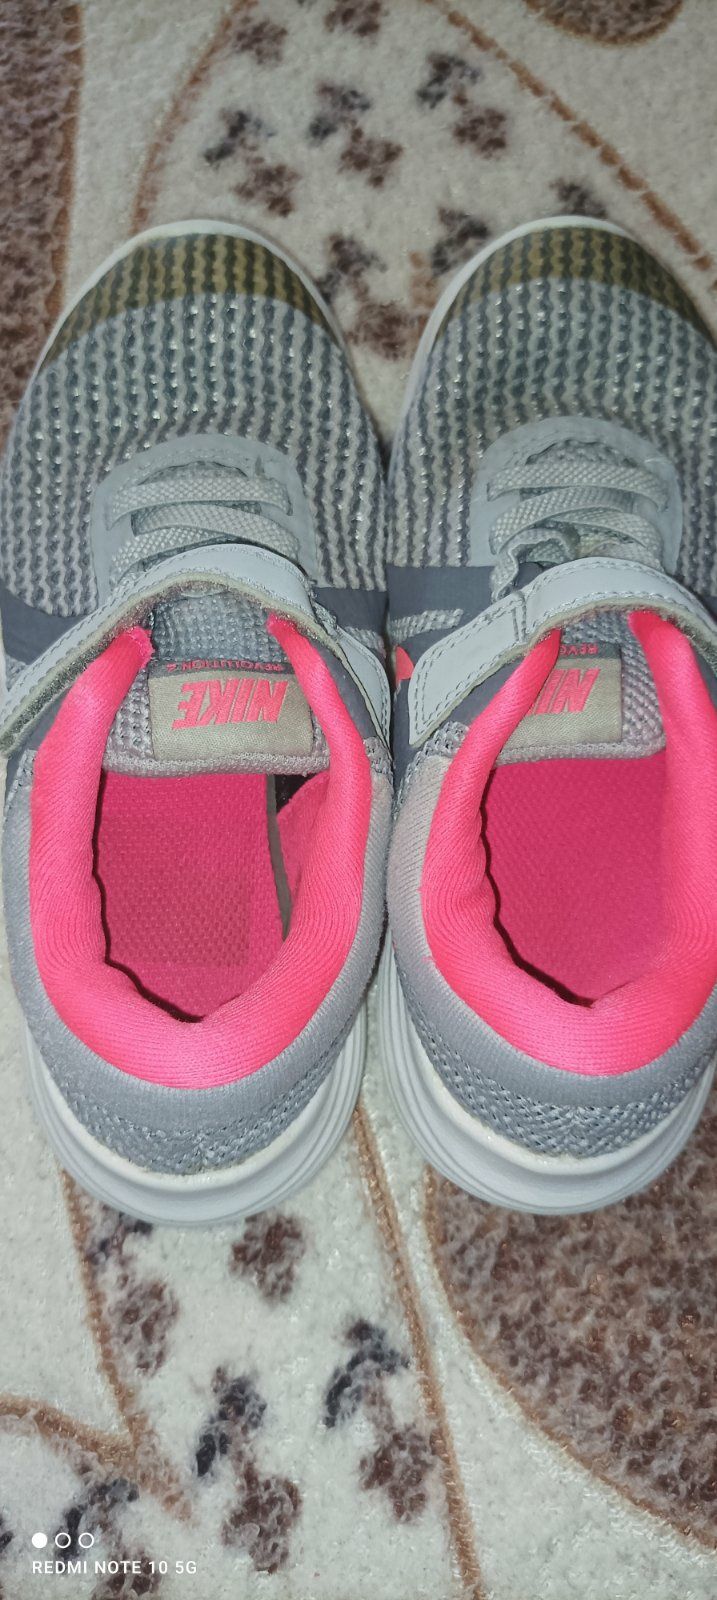 Продам кроссовки детские Nike для девочки 28 размер